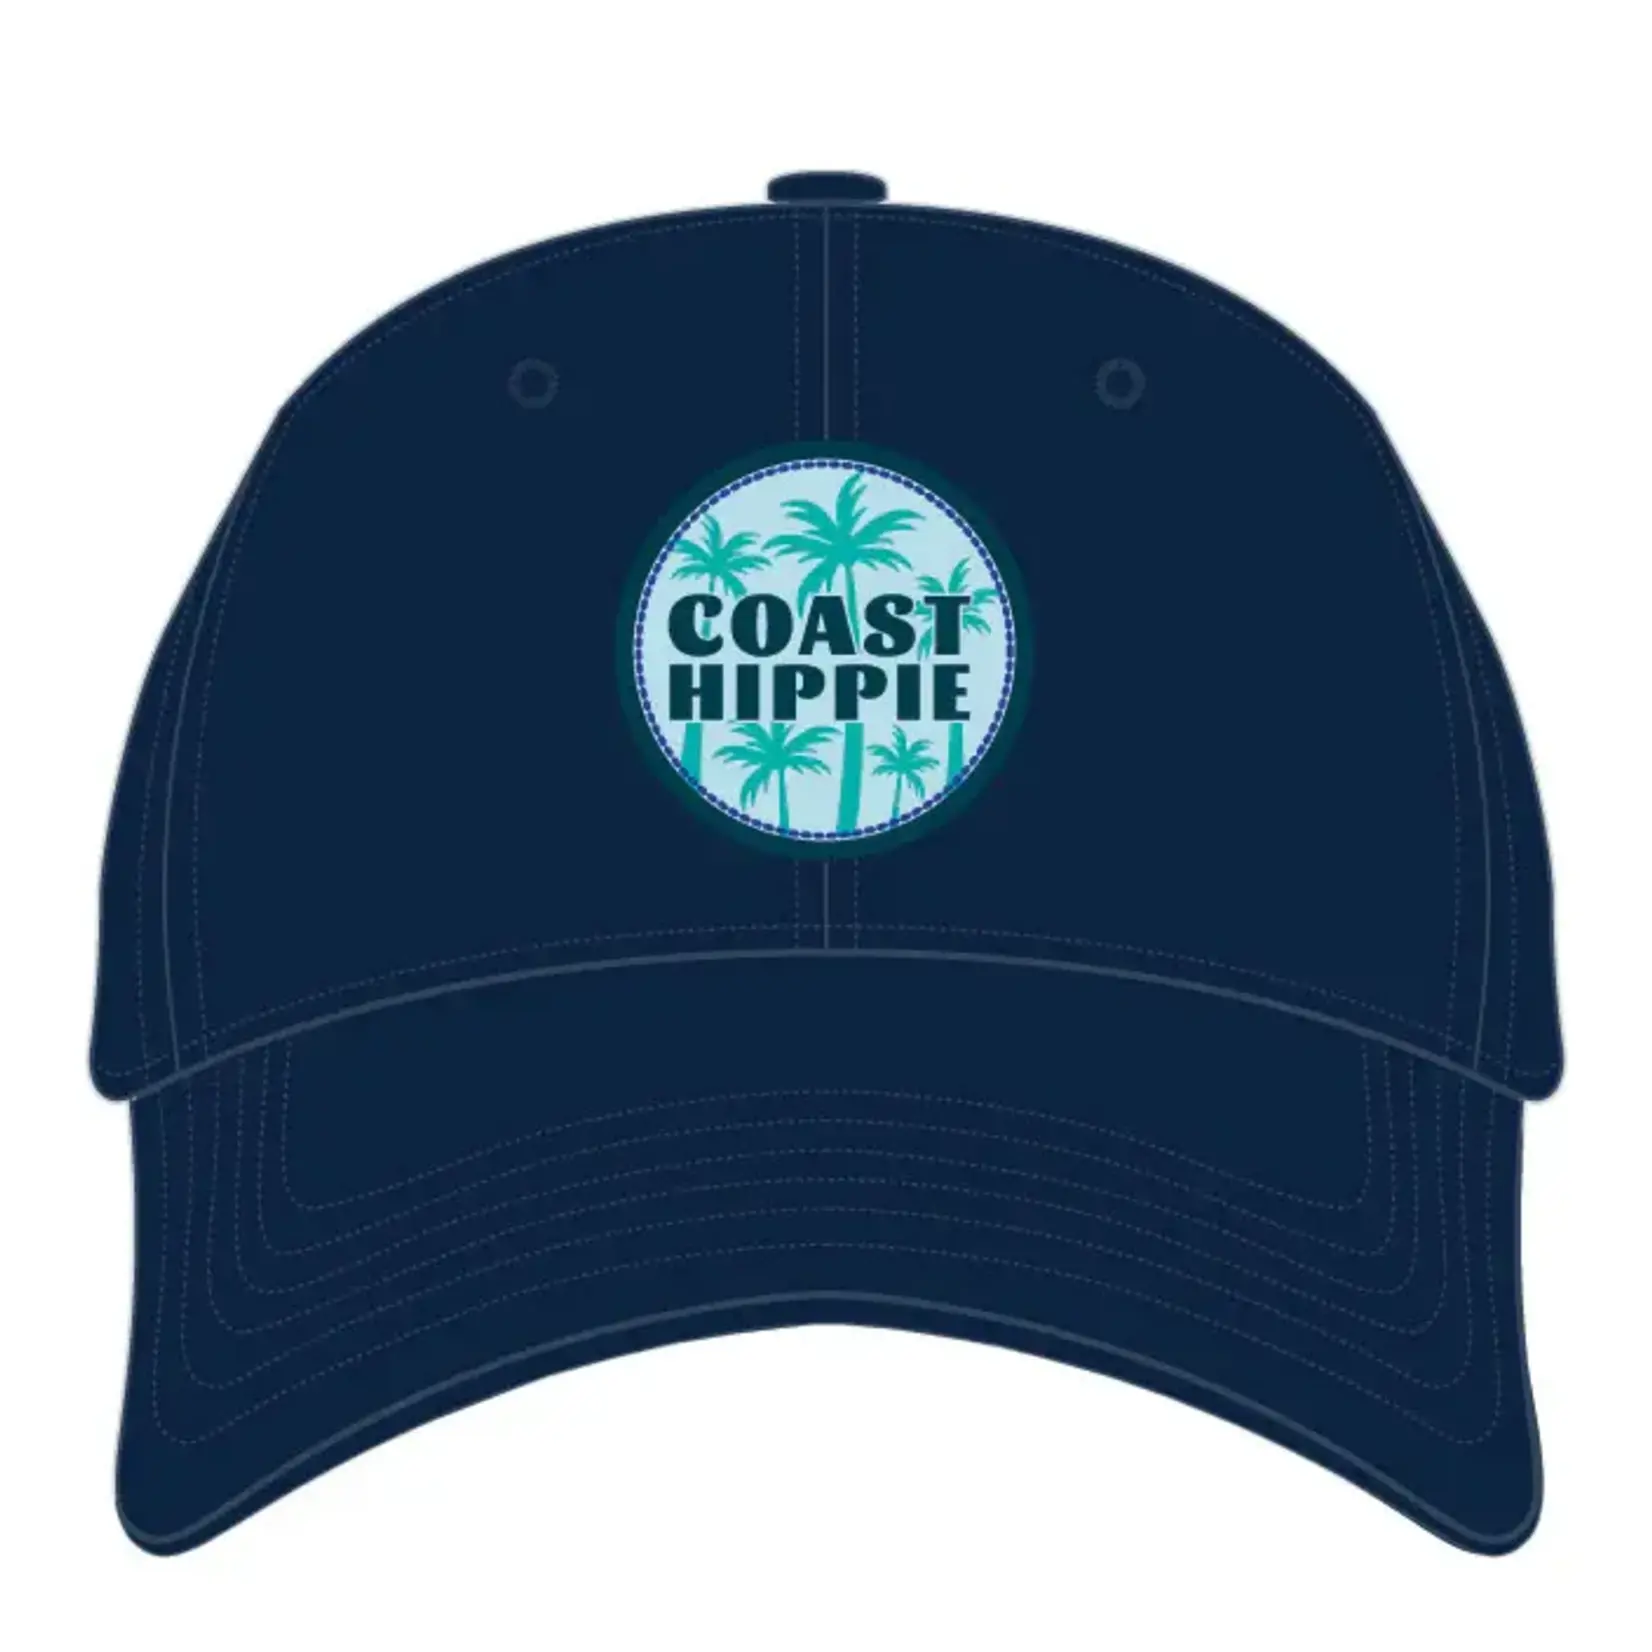 Coast Hippie Coast Hippie Hat - Palm Breeze Navy